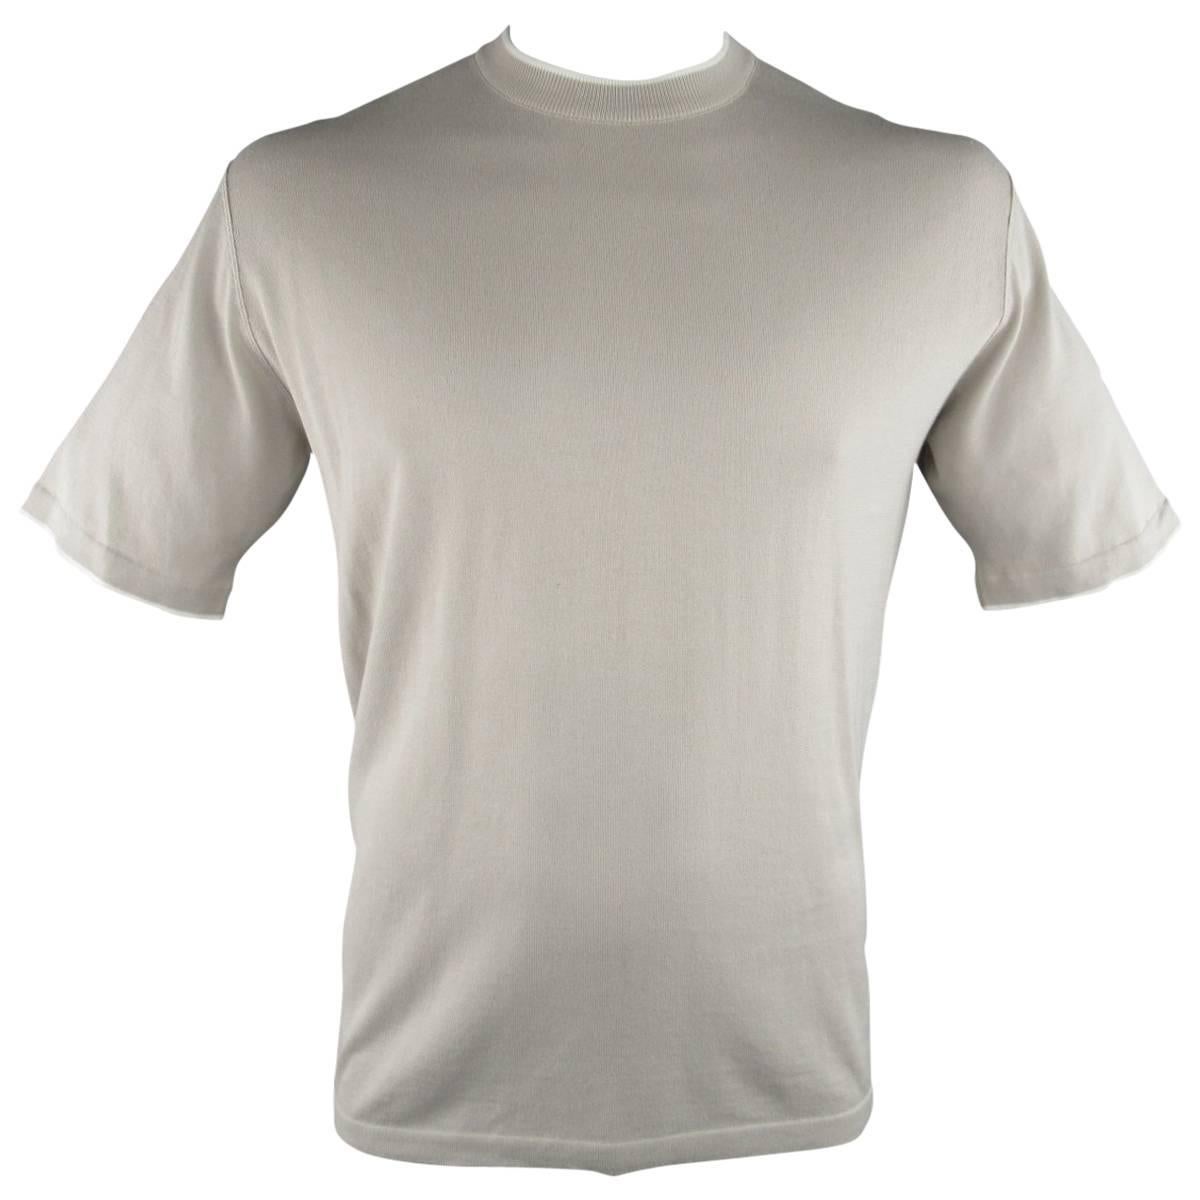 's NWT BRIONI Size L Beige Cotton Pique Knit White Trim T-shirt